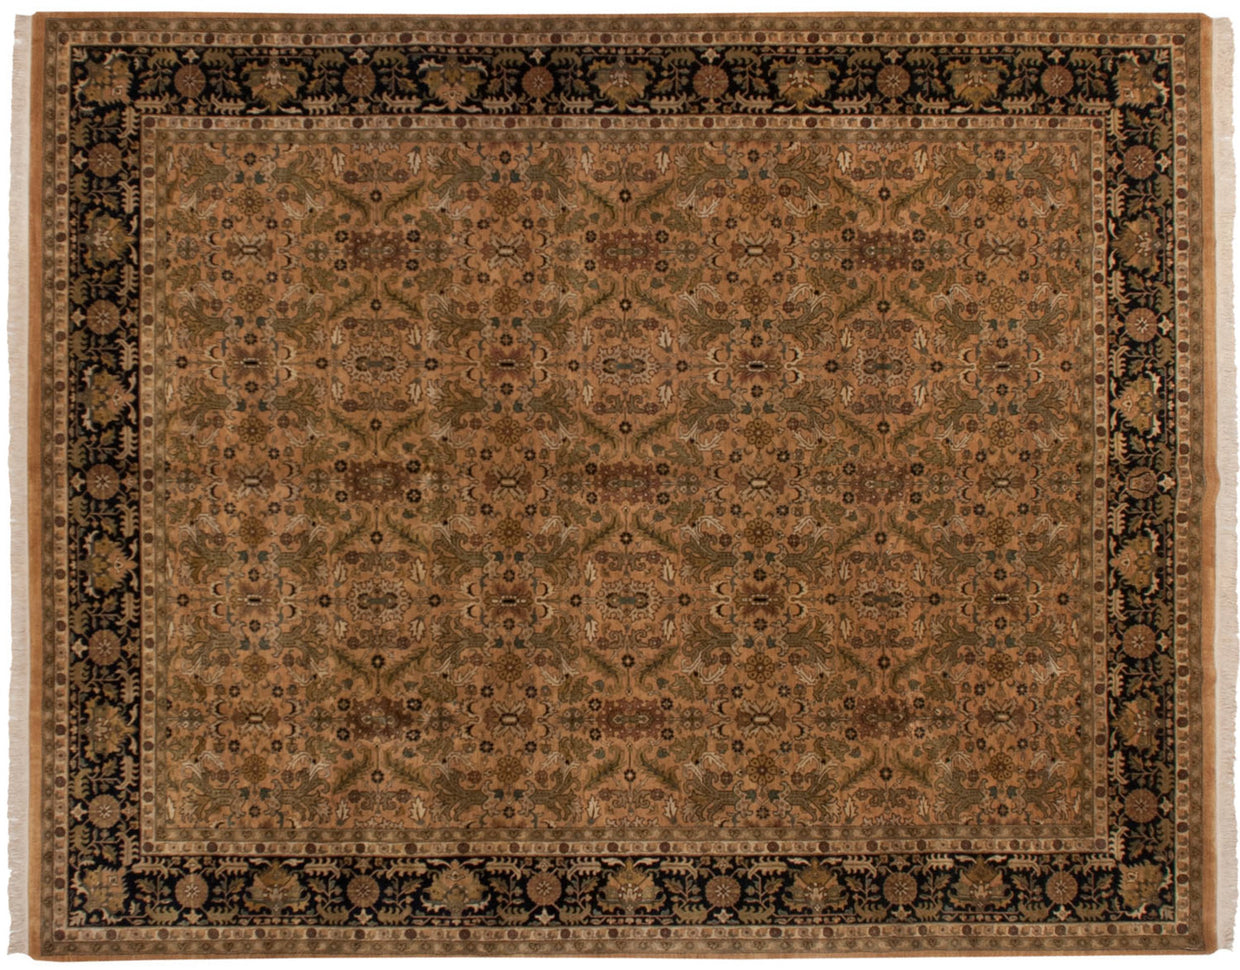 11.5x15 New Indian Heriz Design Carpet // ONH Item mc001600